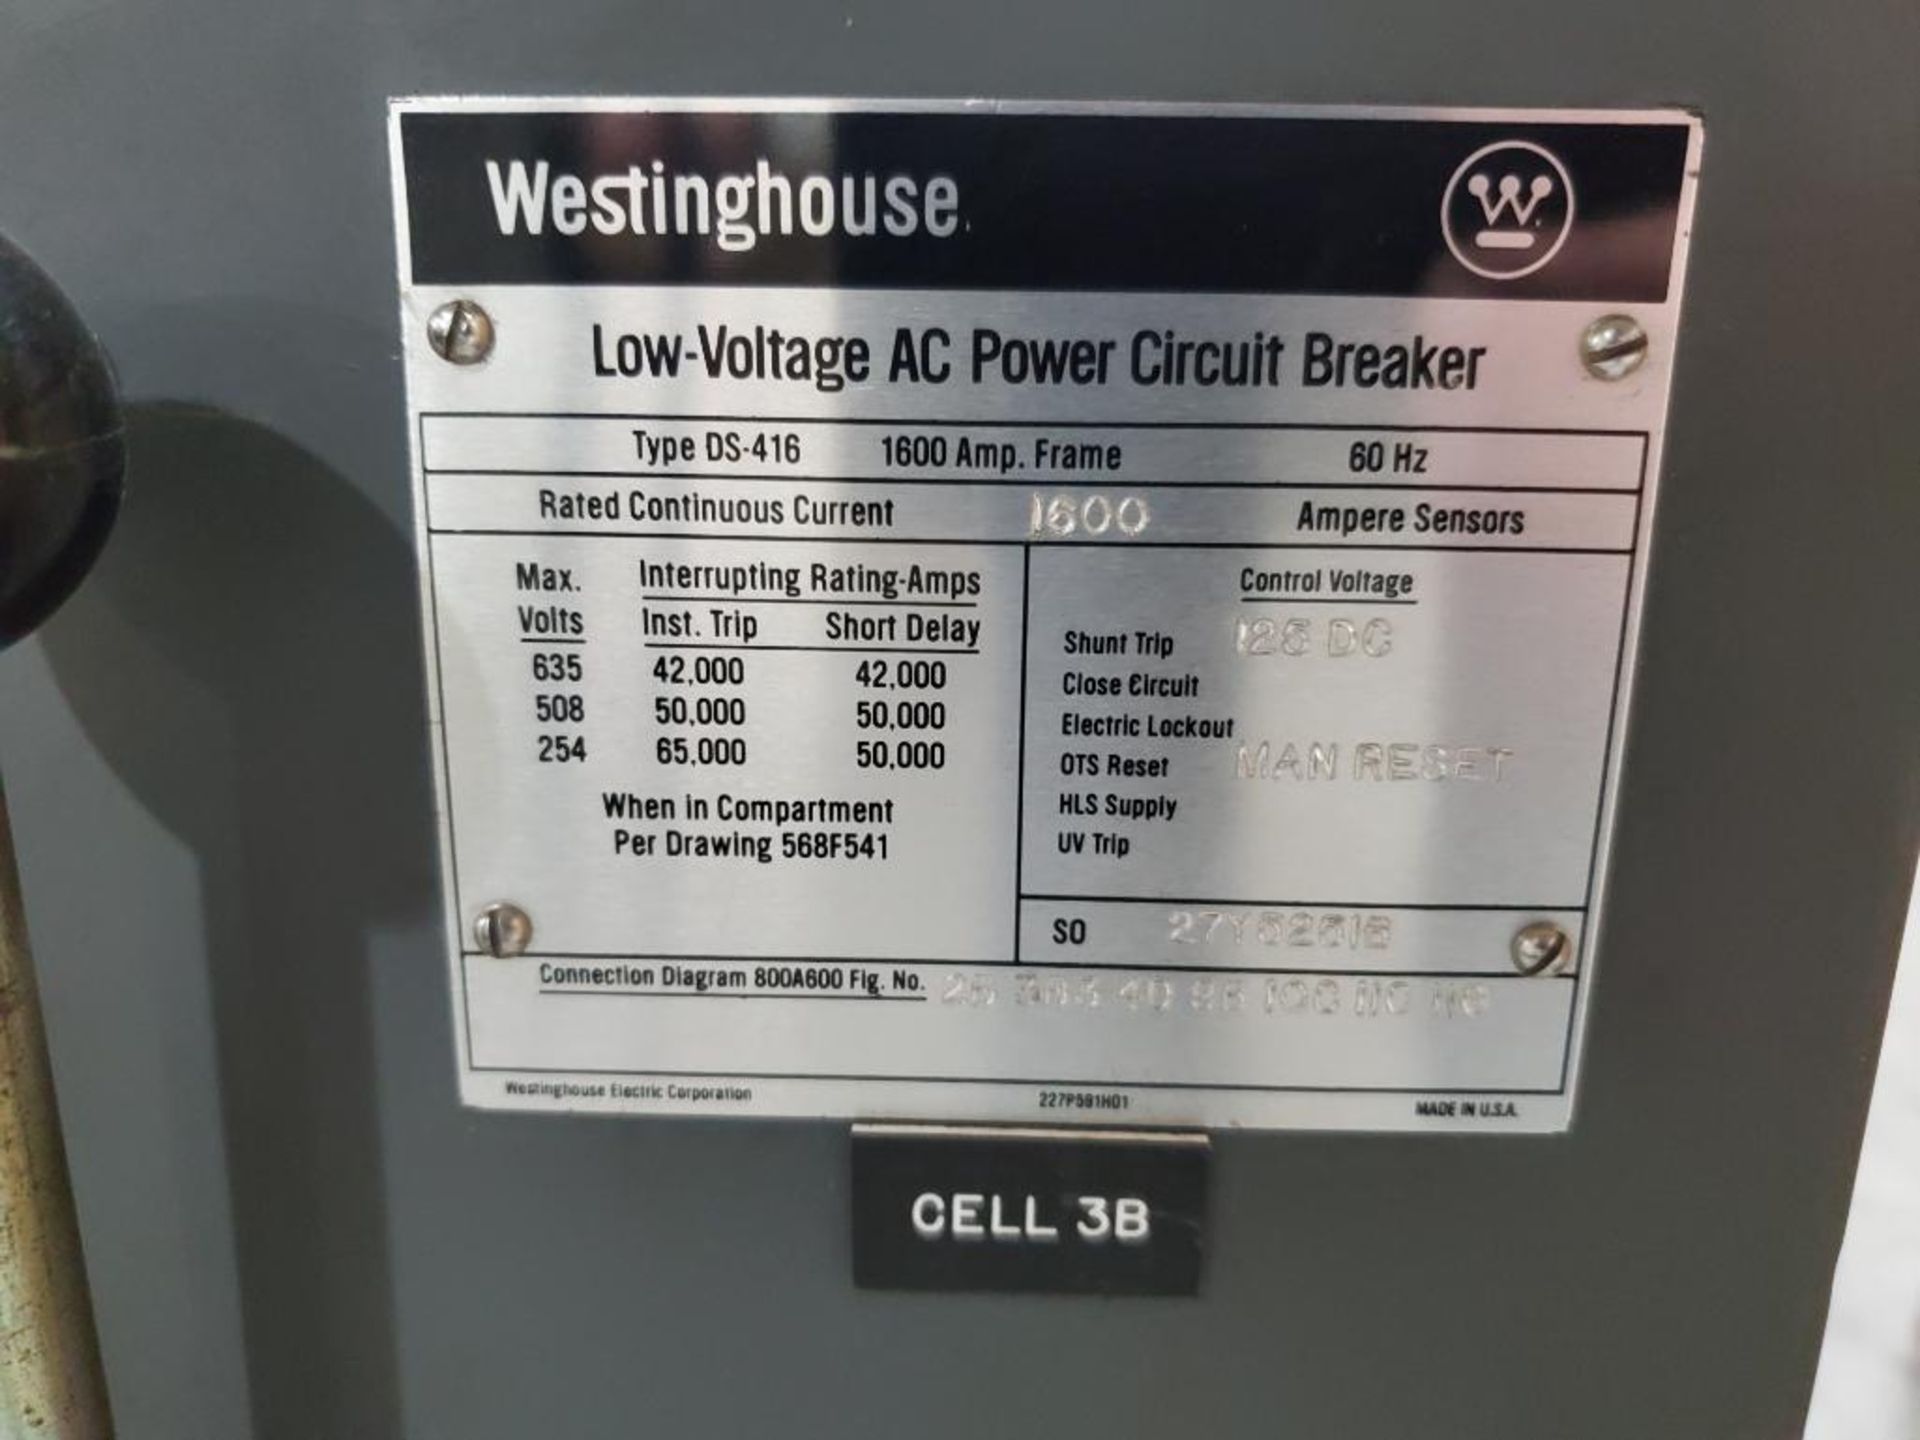 1600 amp Westinghouse Low Voltage AC Power Circuit Breaker. Type DS-416. - Bild 3 aus 9